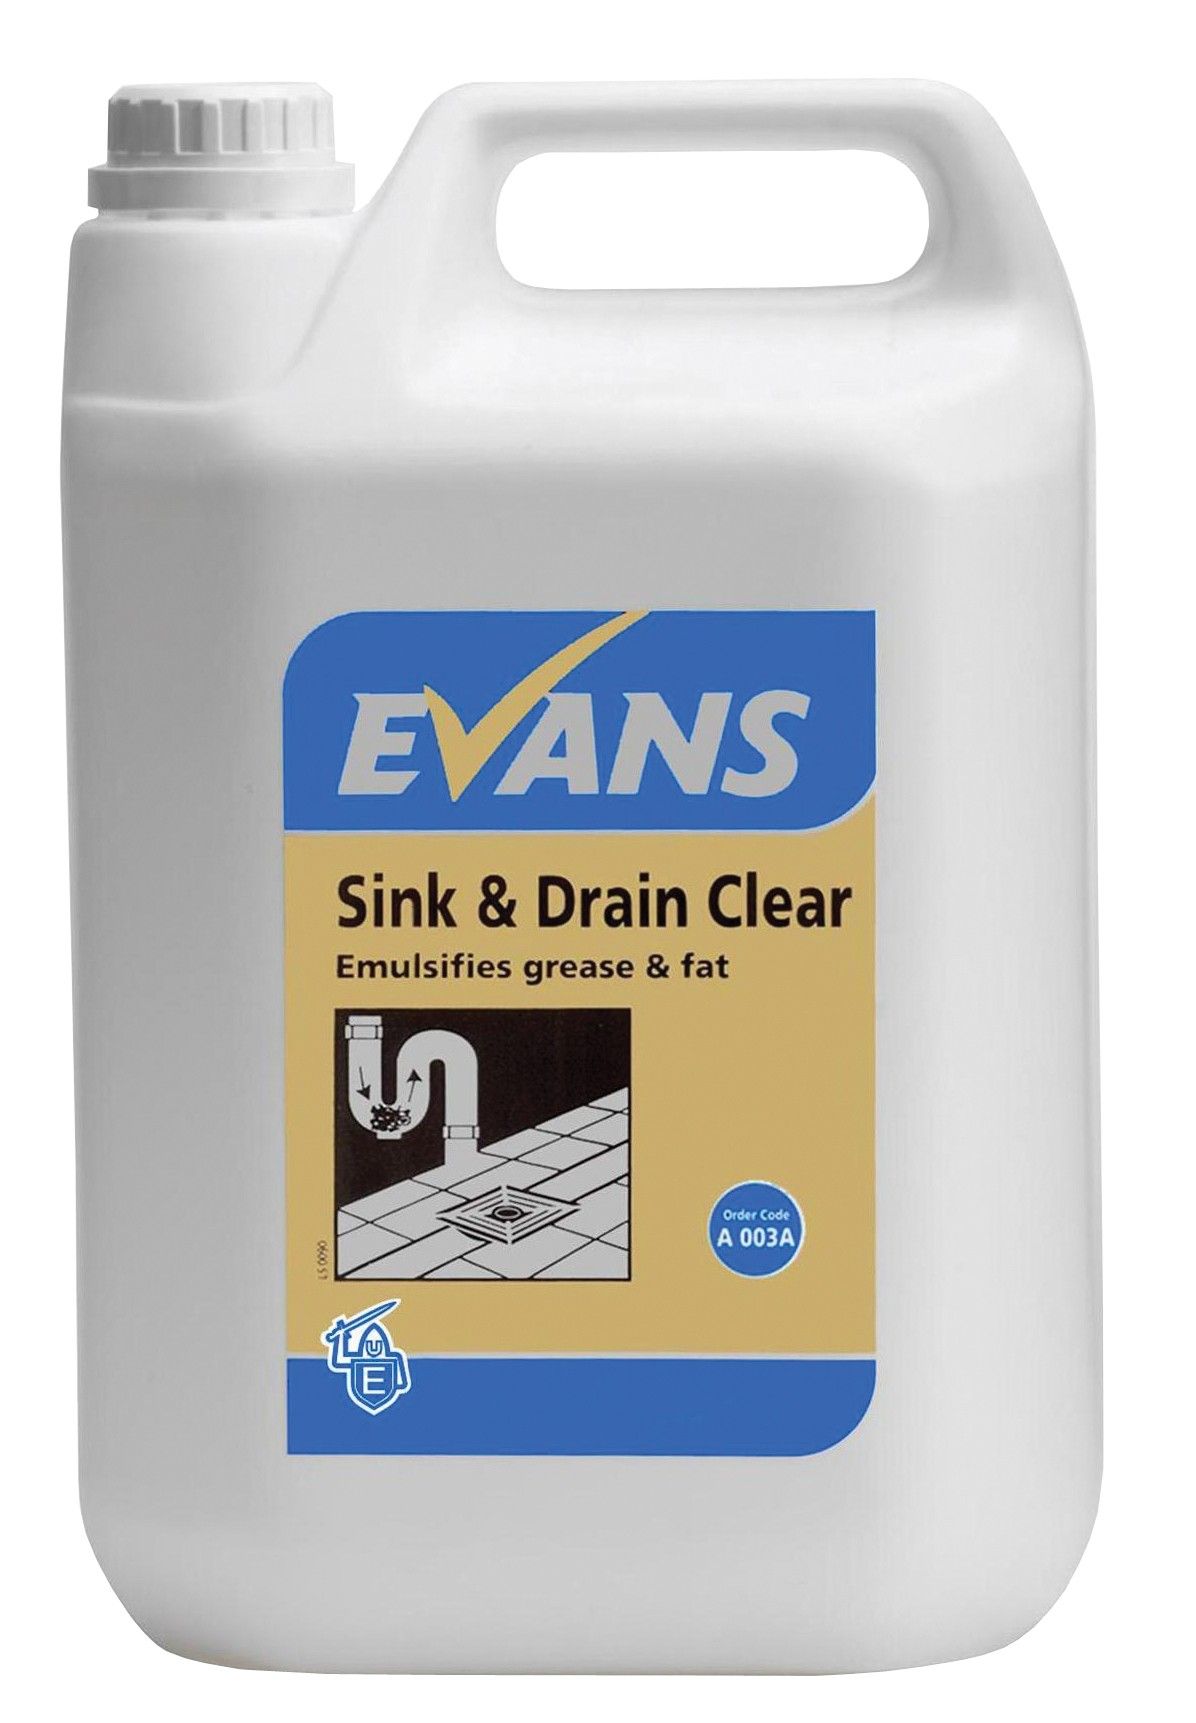 Evans Sink & Drain Clear - Grease & Fat Emulsifier 2.5 Ltr